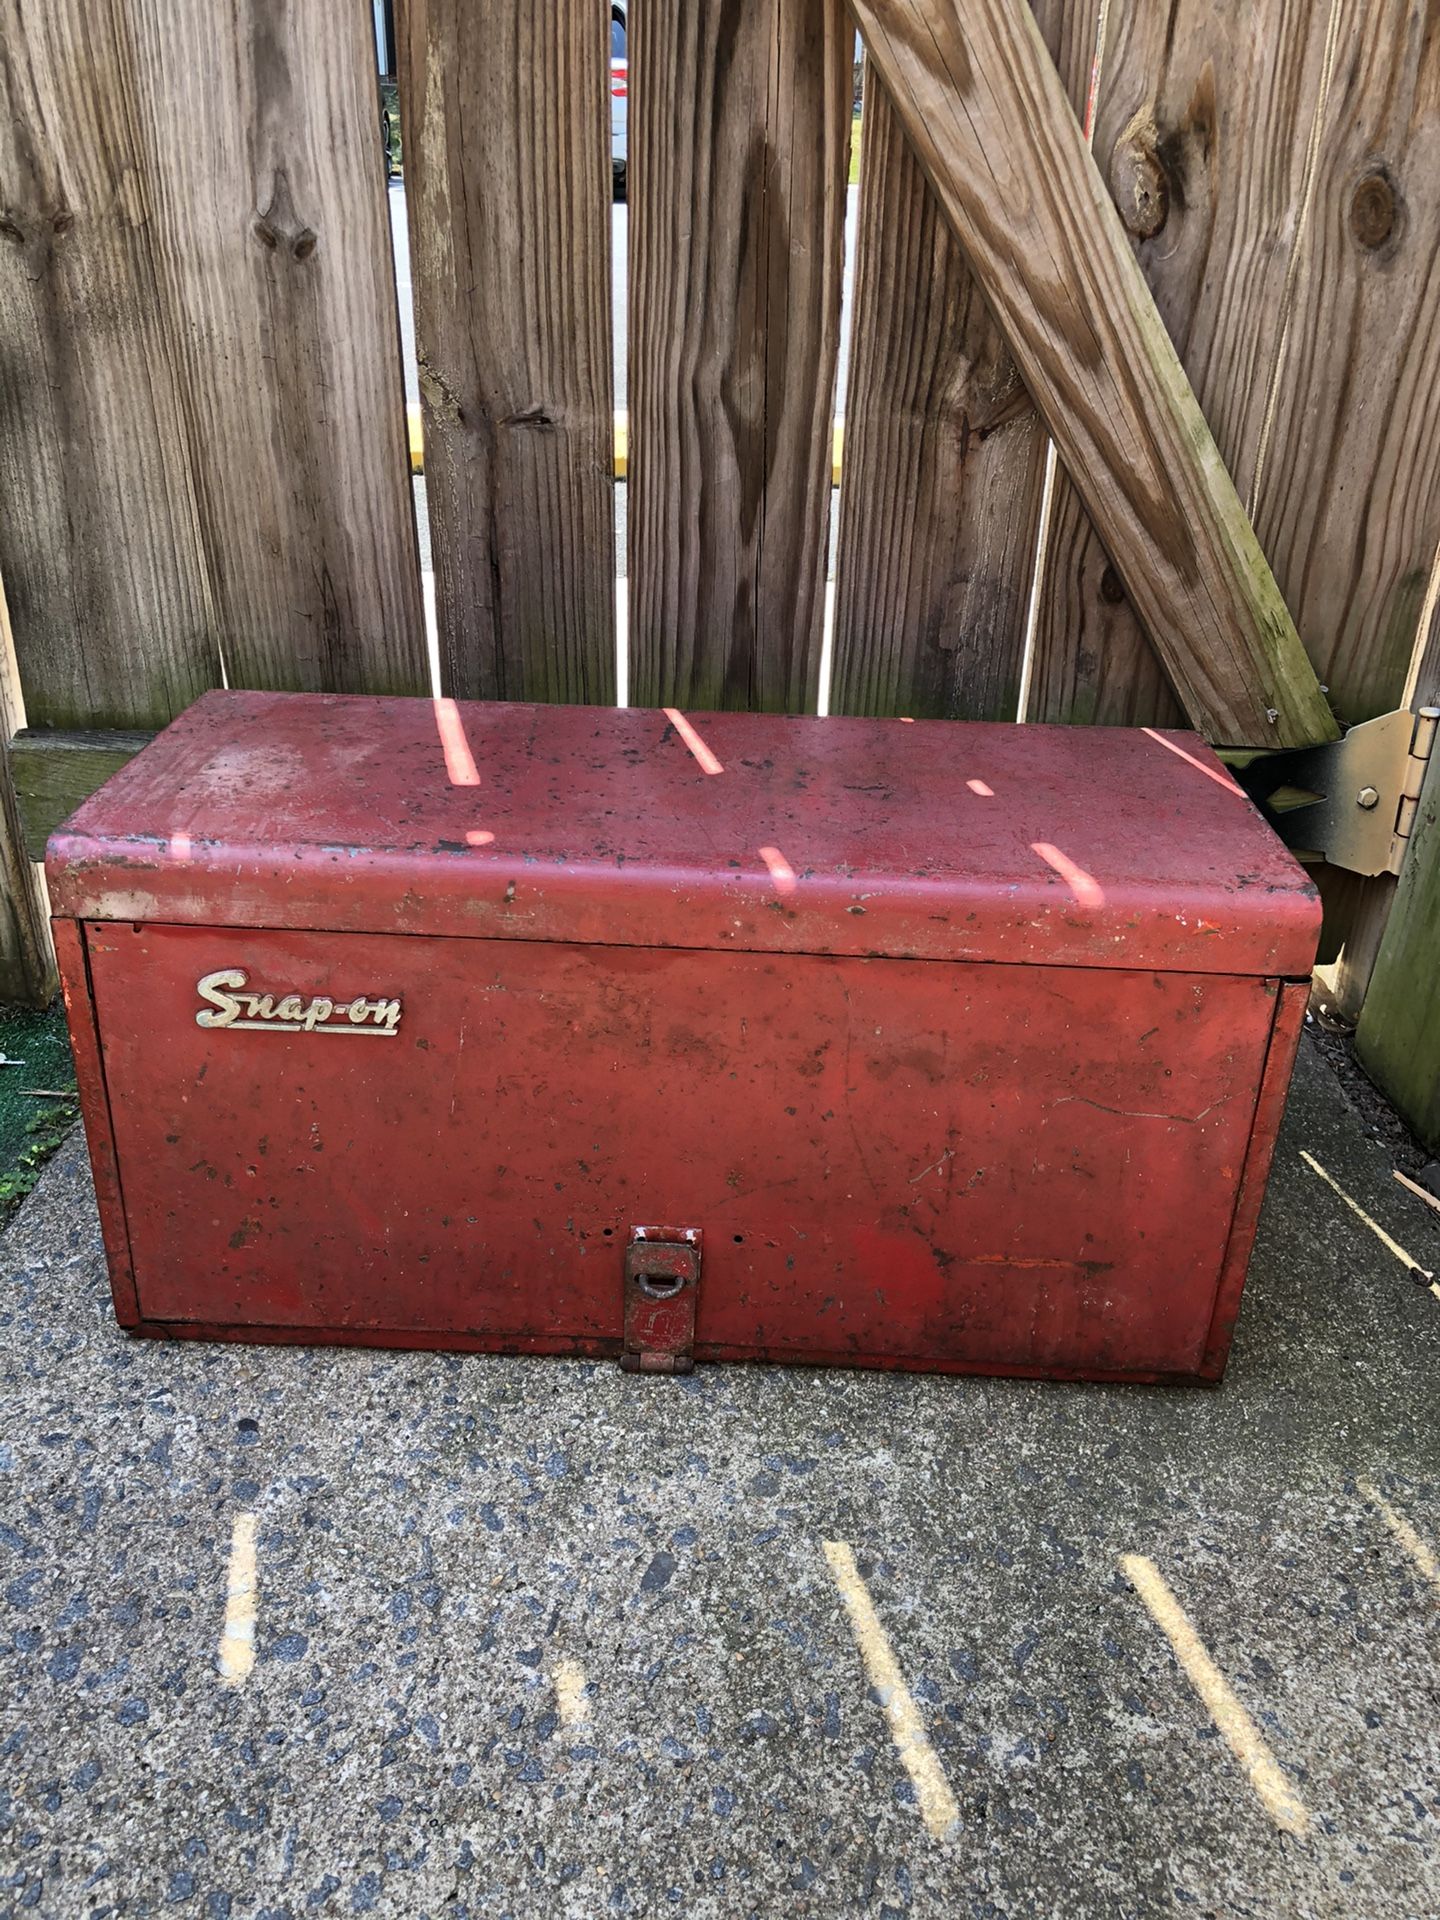 Vintage Snap on Tools Box